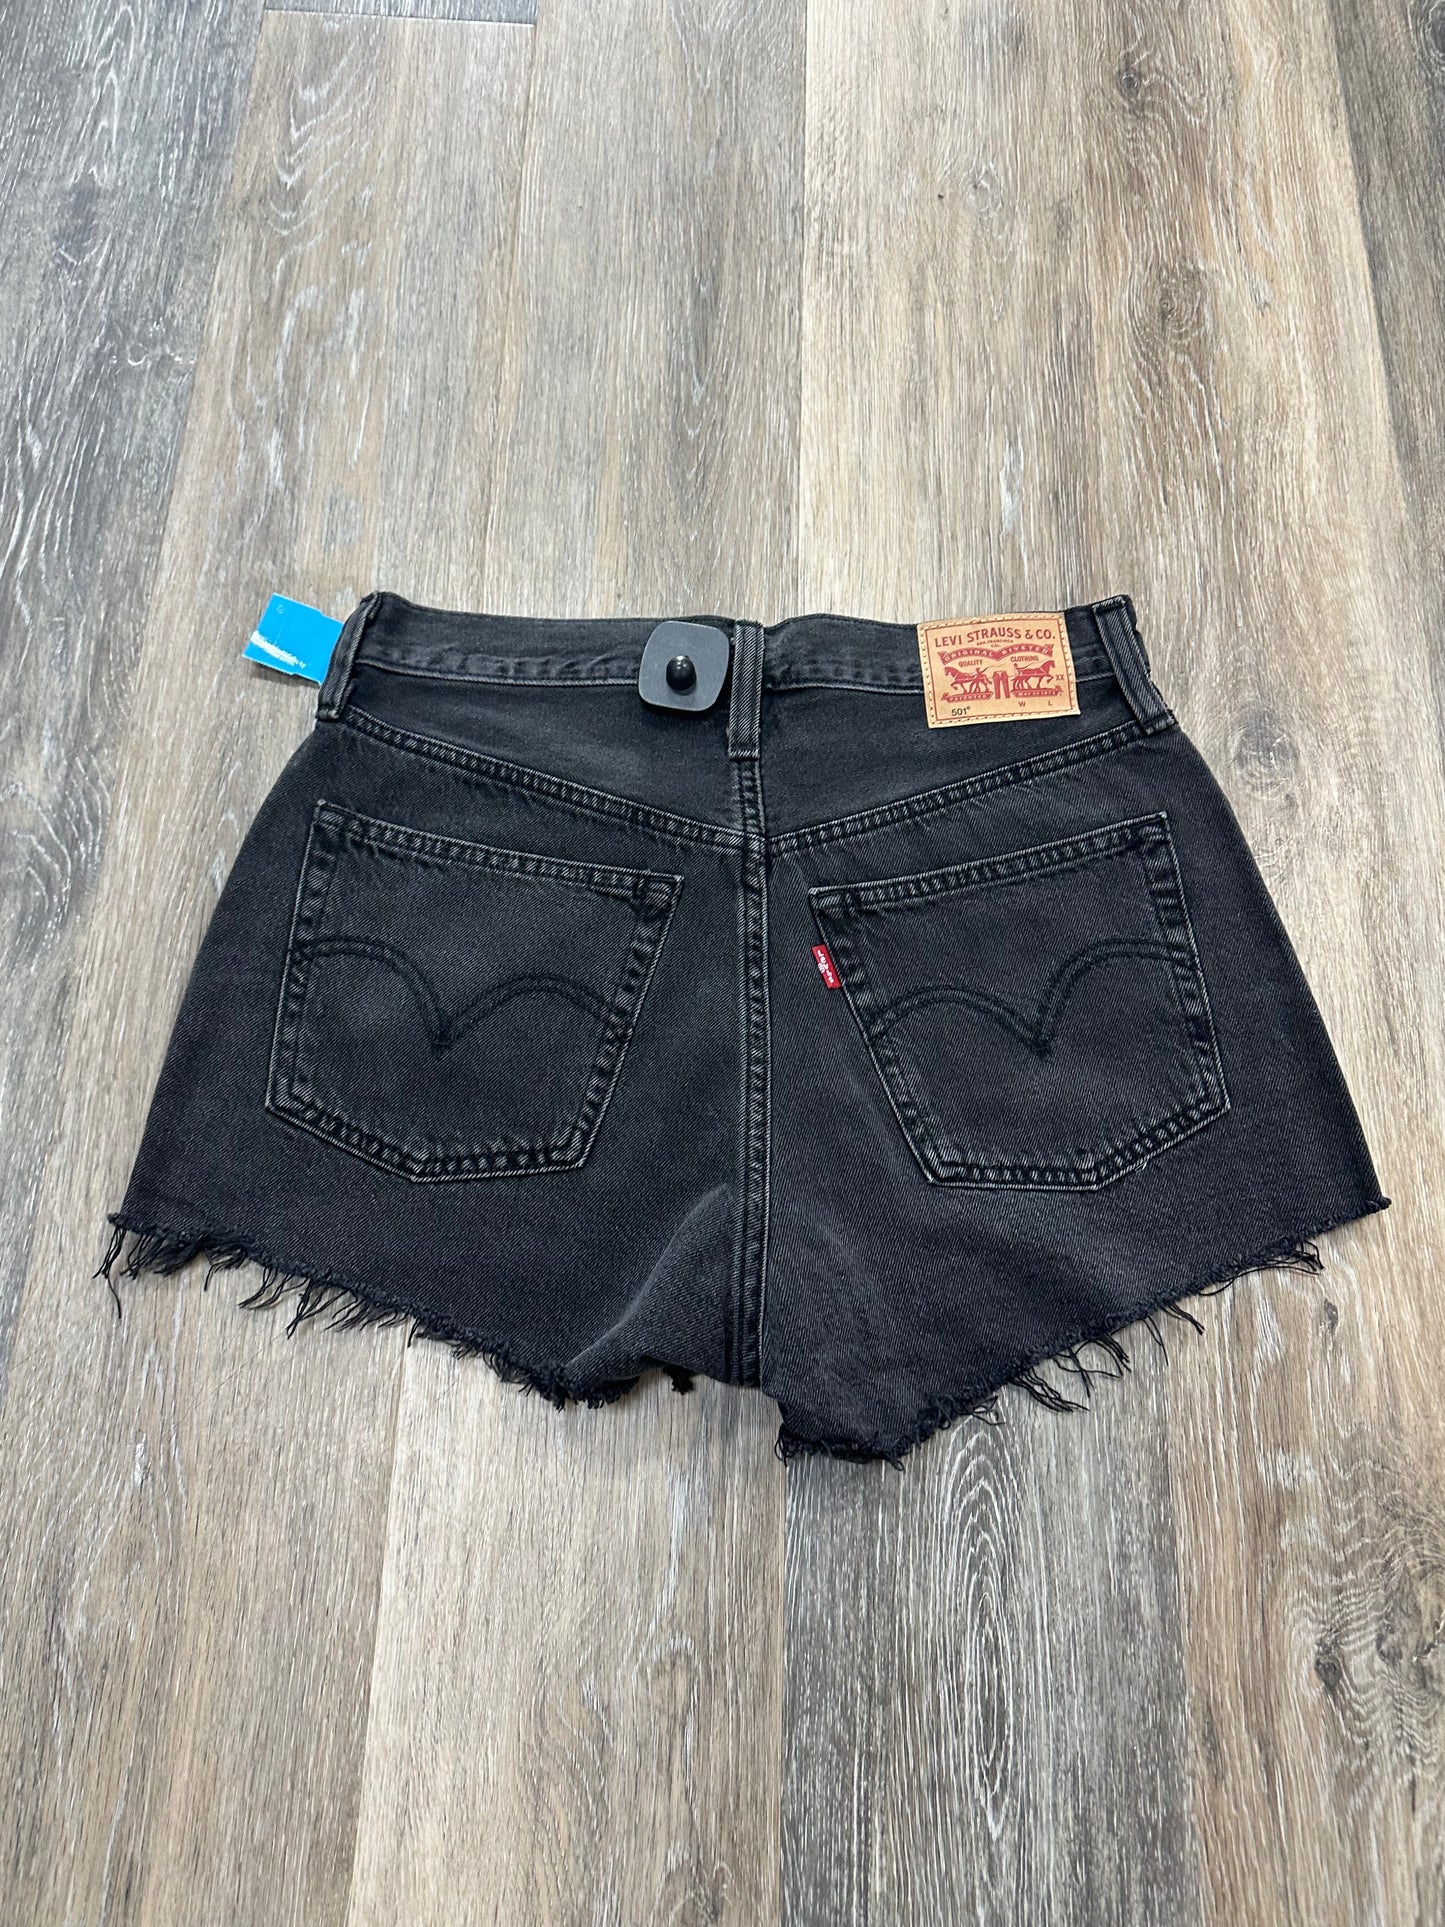 Black Denim Shorts Levis, Size 4